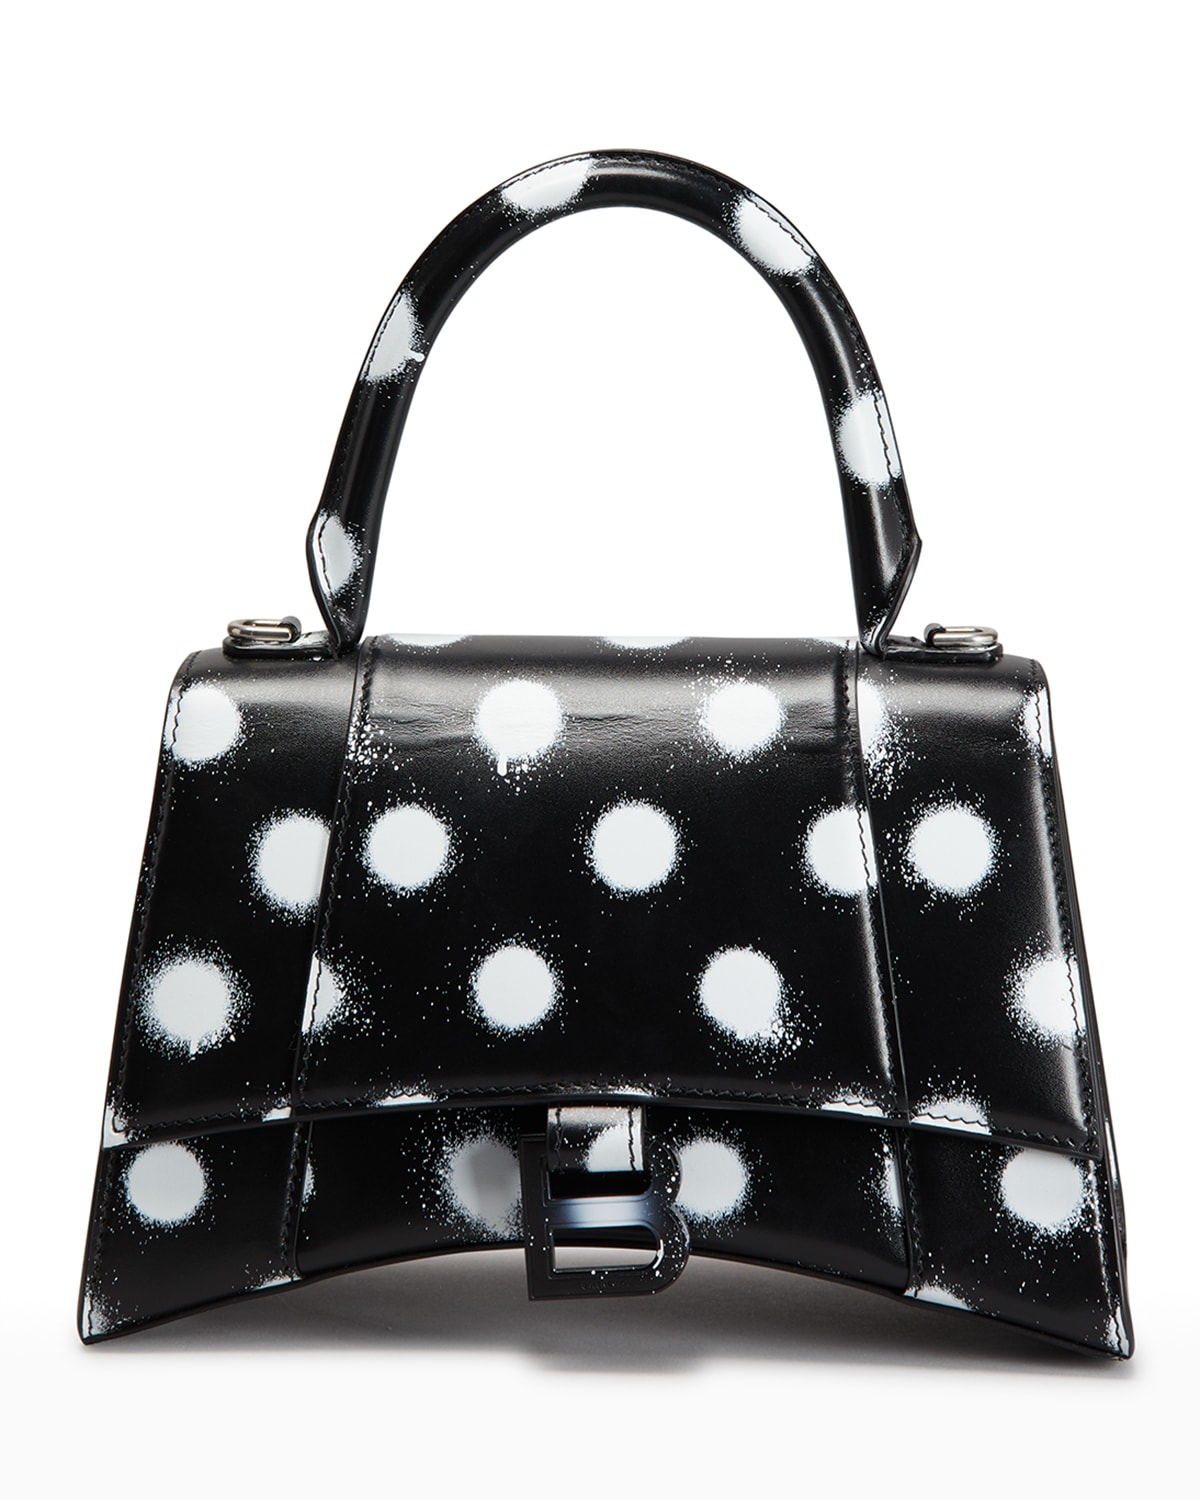 Balenciaga Hourglass Small Polka-Dot Top-Handle Bag